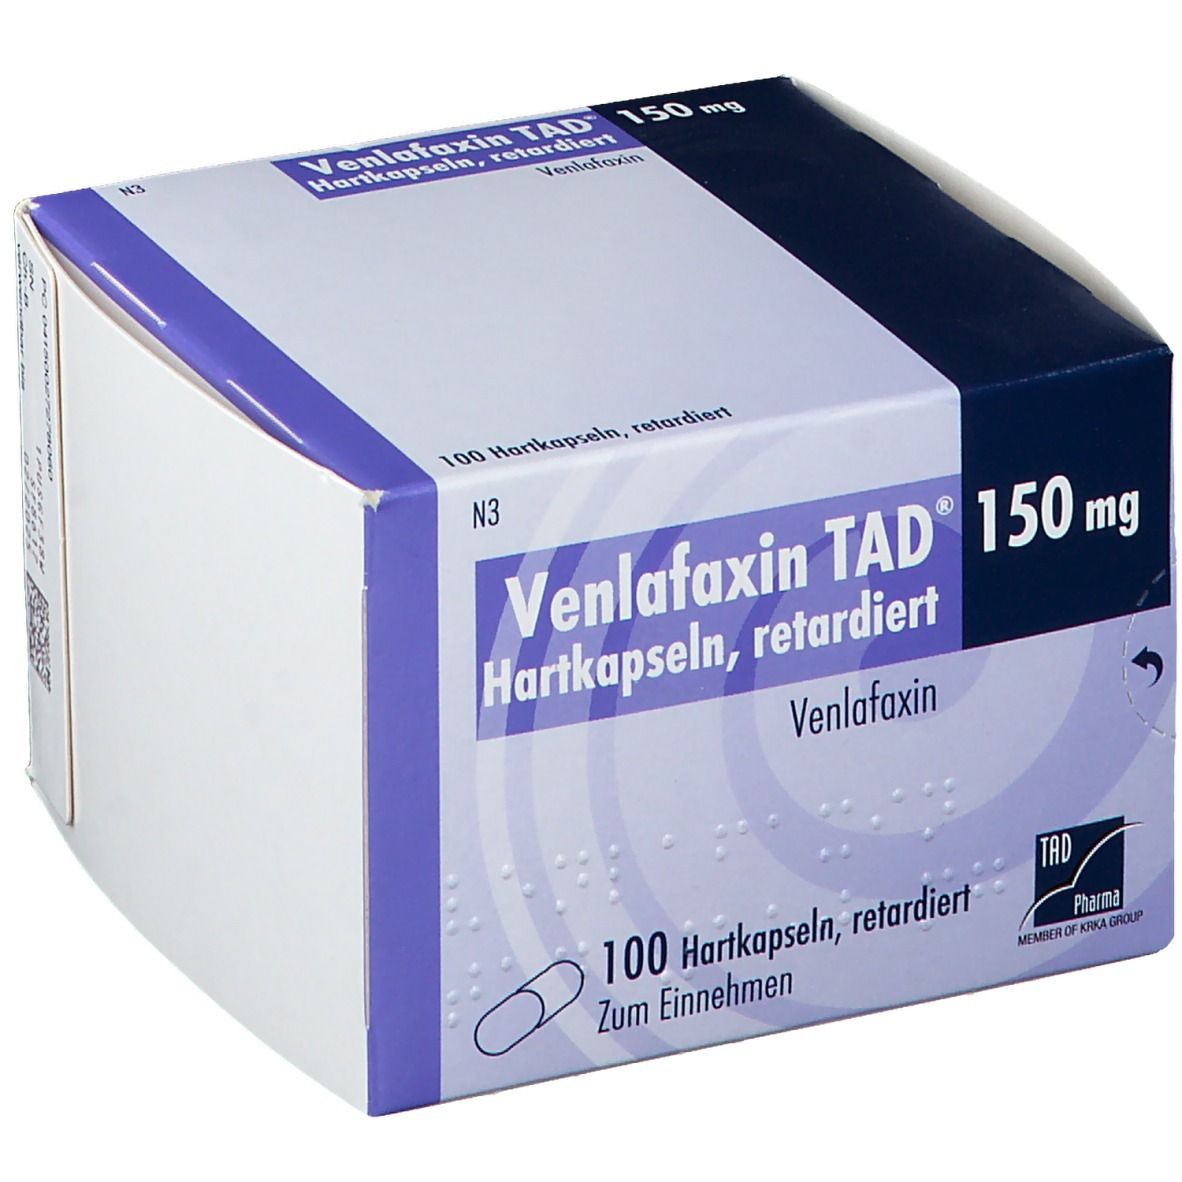 Venlafaxin TAD® 150 mg